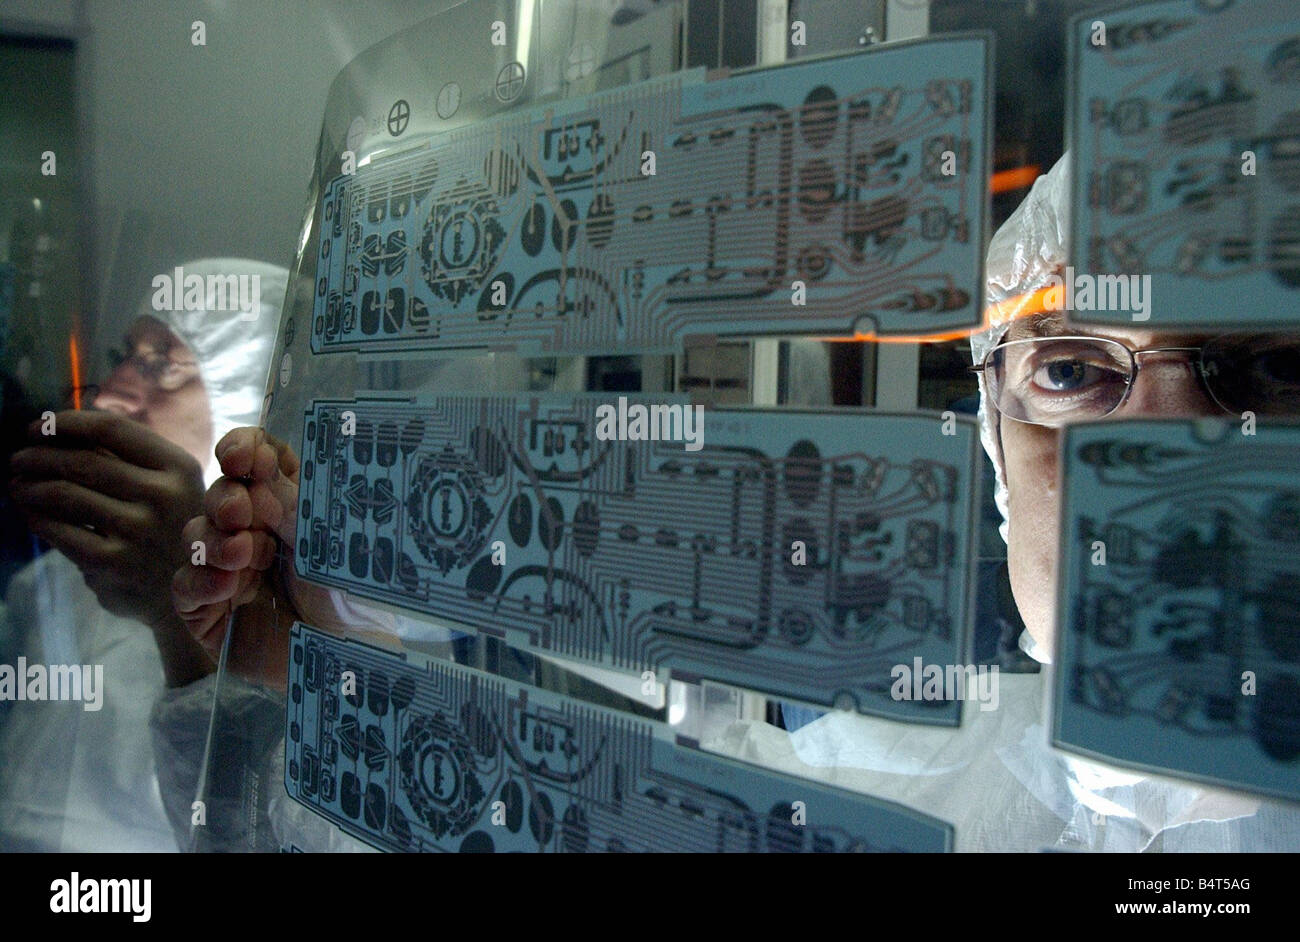 Peter Walker directeur technique du Pelikon inspecte visuellement une feuille imprimée des écrans utilisés dans la production de l'un dans l'une six Kameleon télécommande universelle faite par l'entreprise Janvier 2003 Banque D'Images